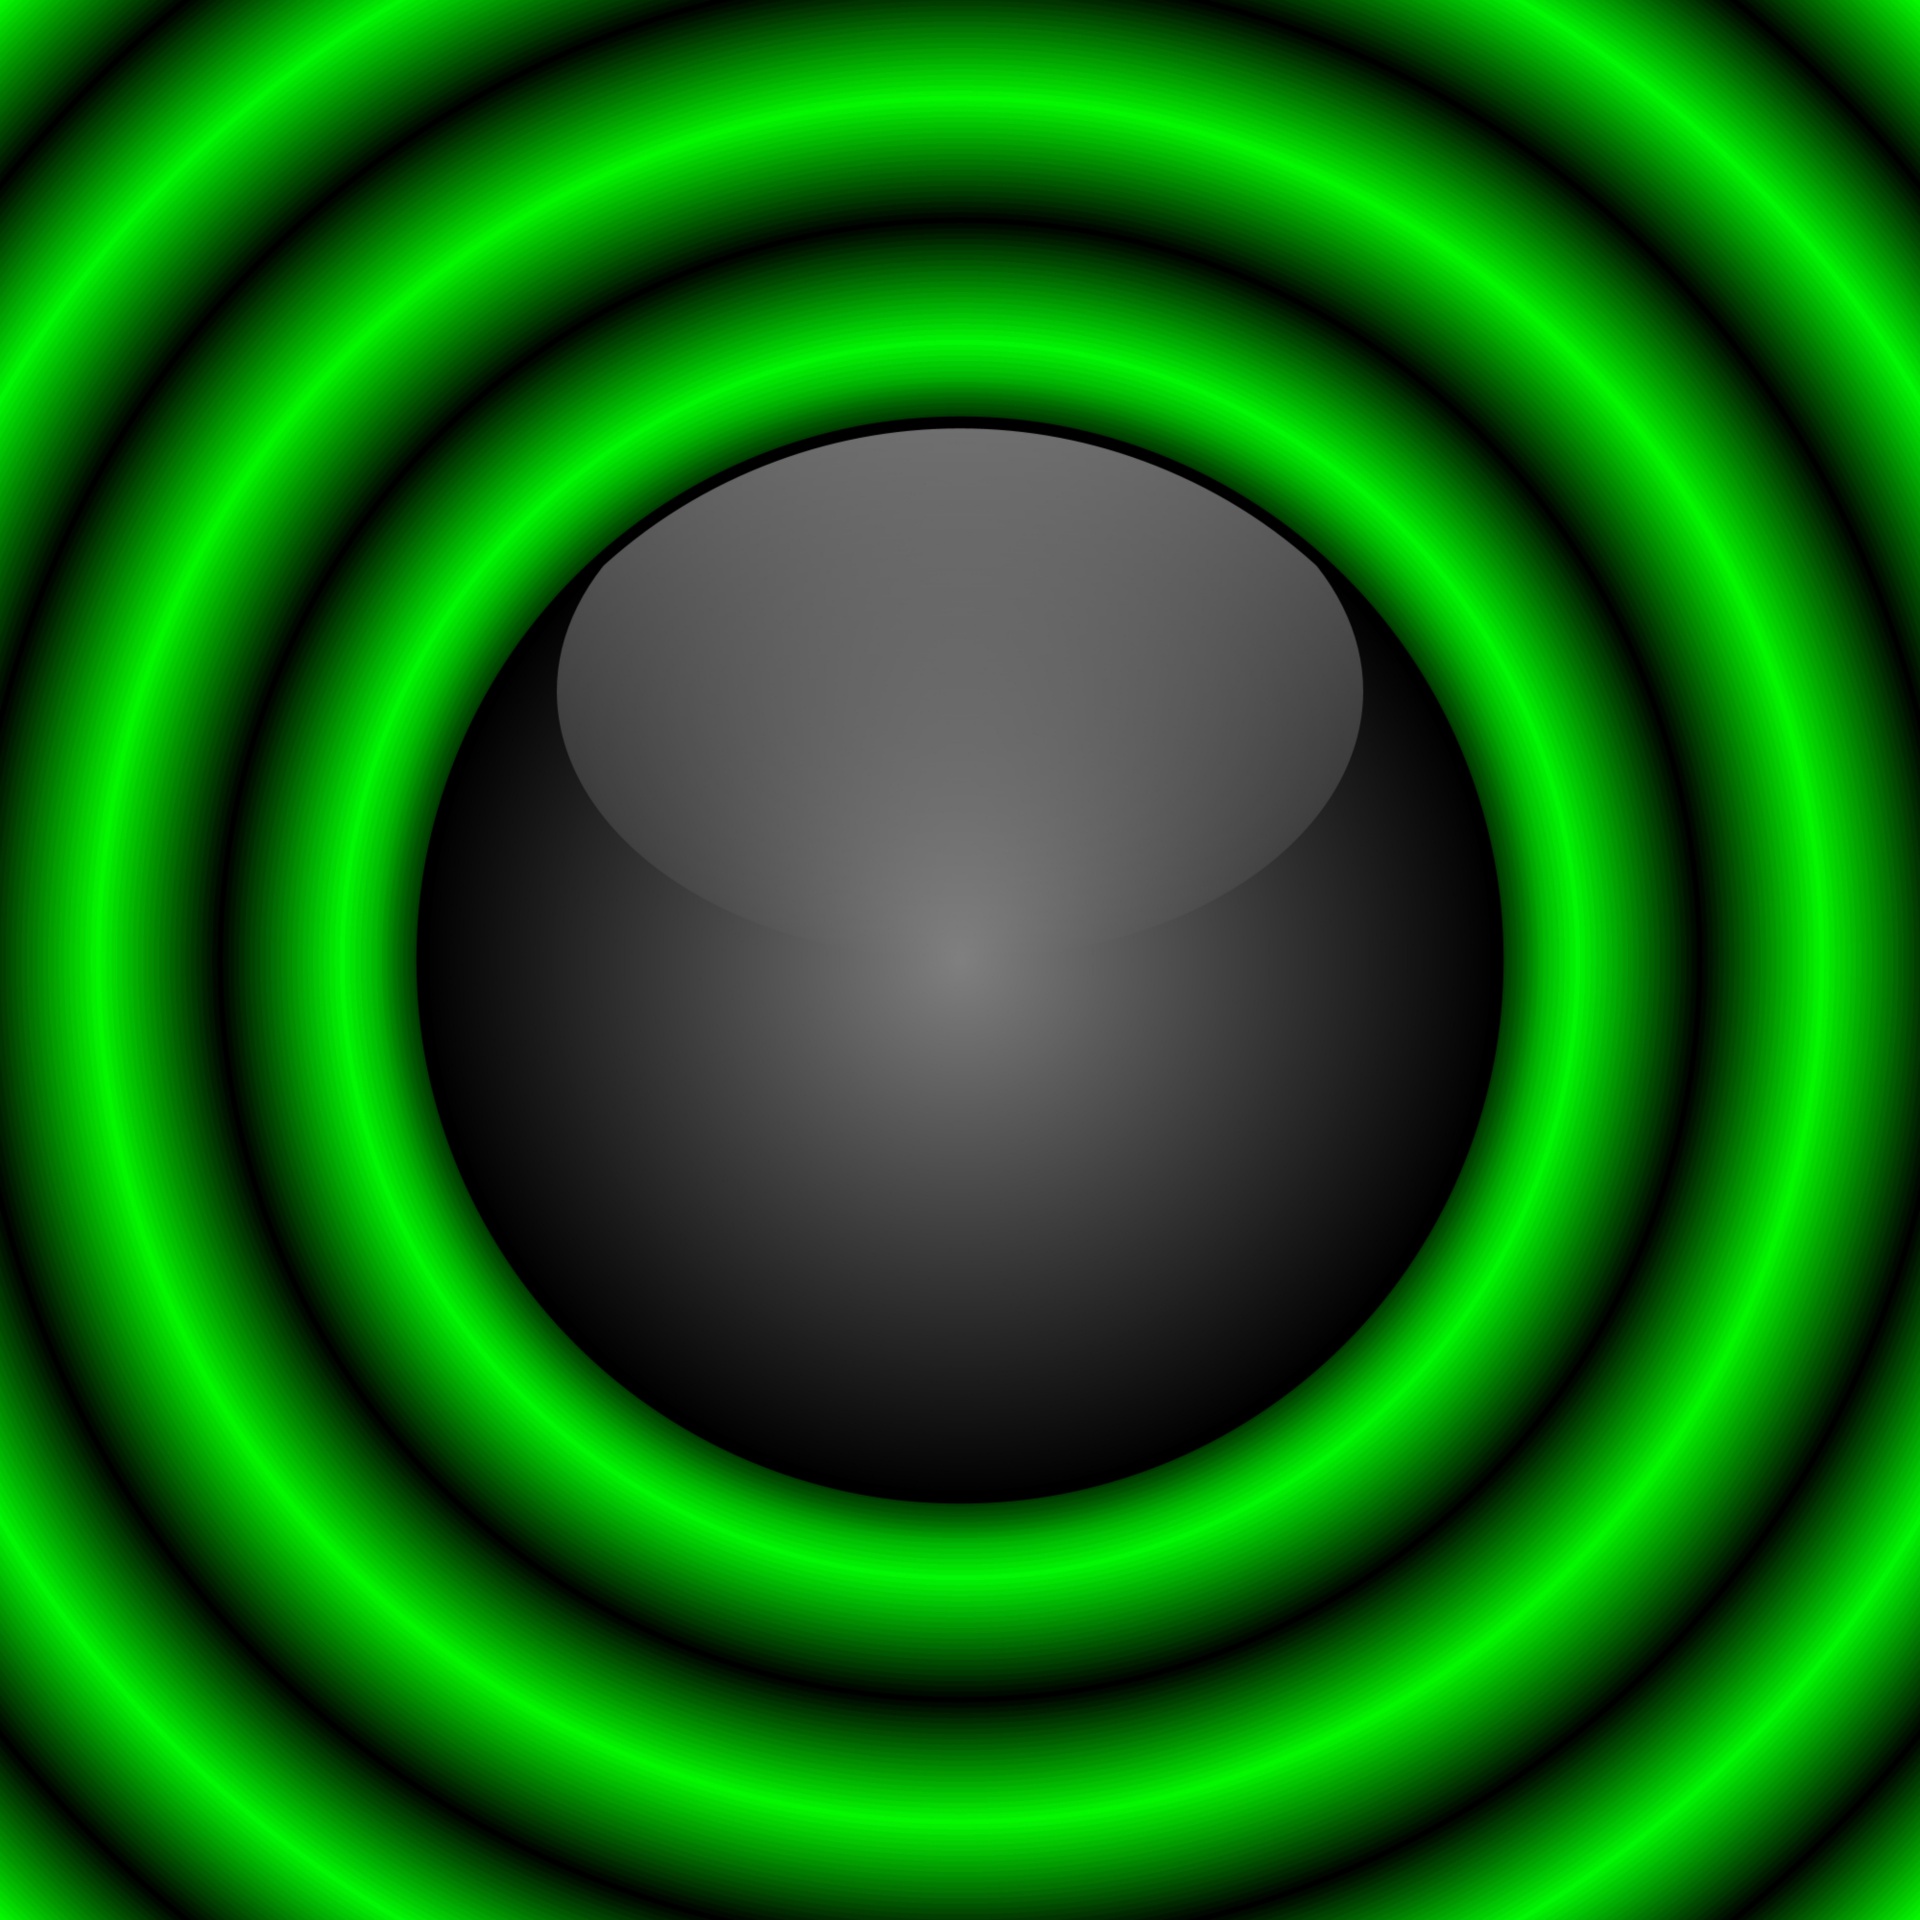 Zwarte bal met groene ringen